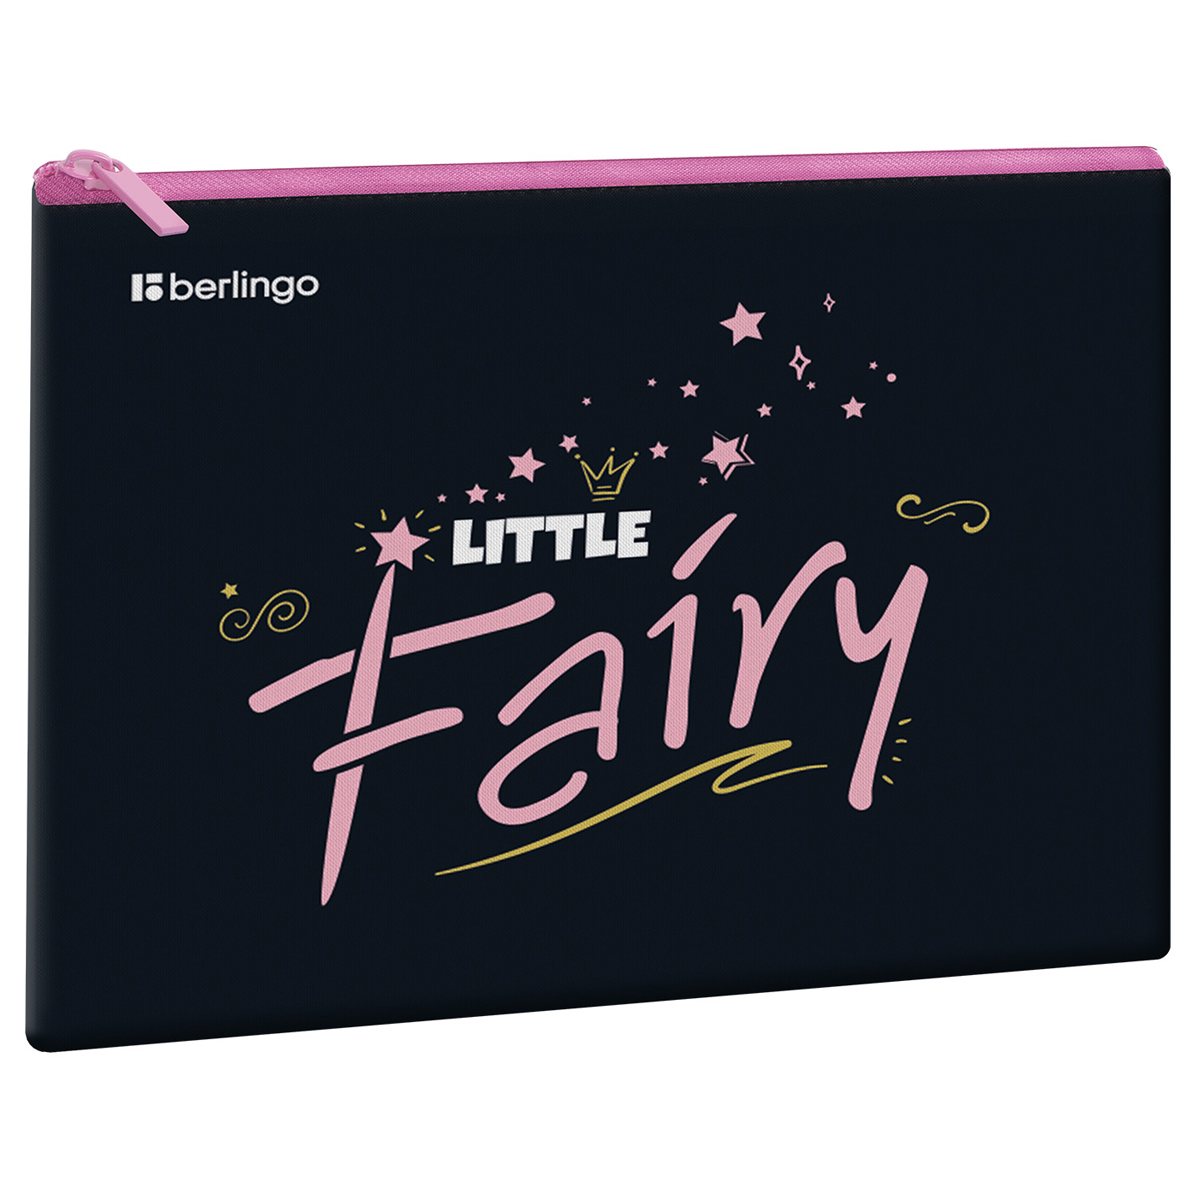  1 , 5 Berlingo "Little fairy", 255 